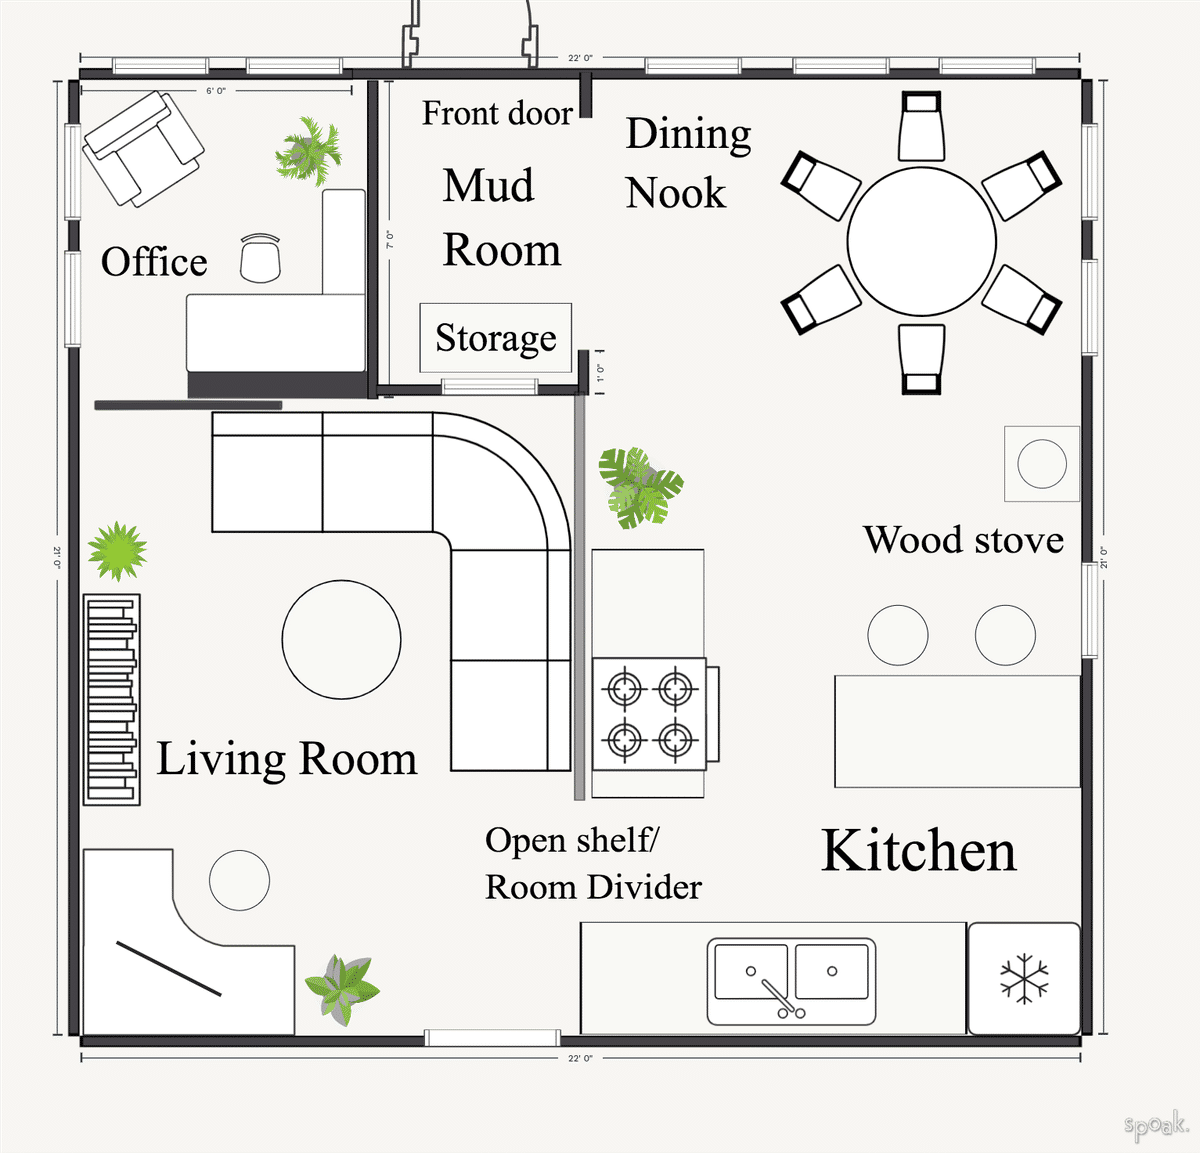 Kitchen Plan designed by Allegra Williams